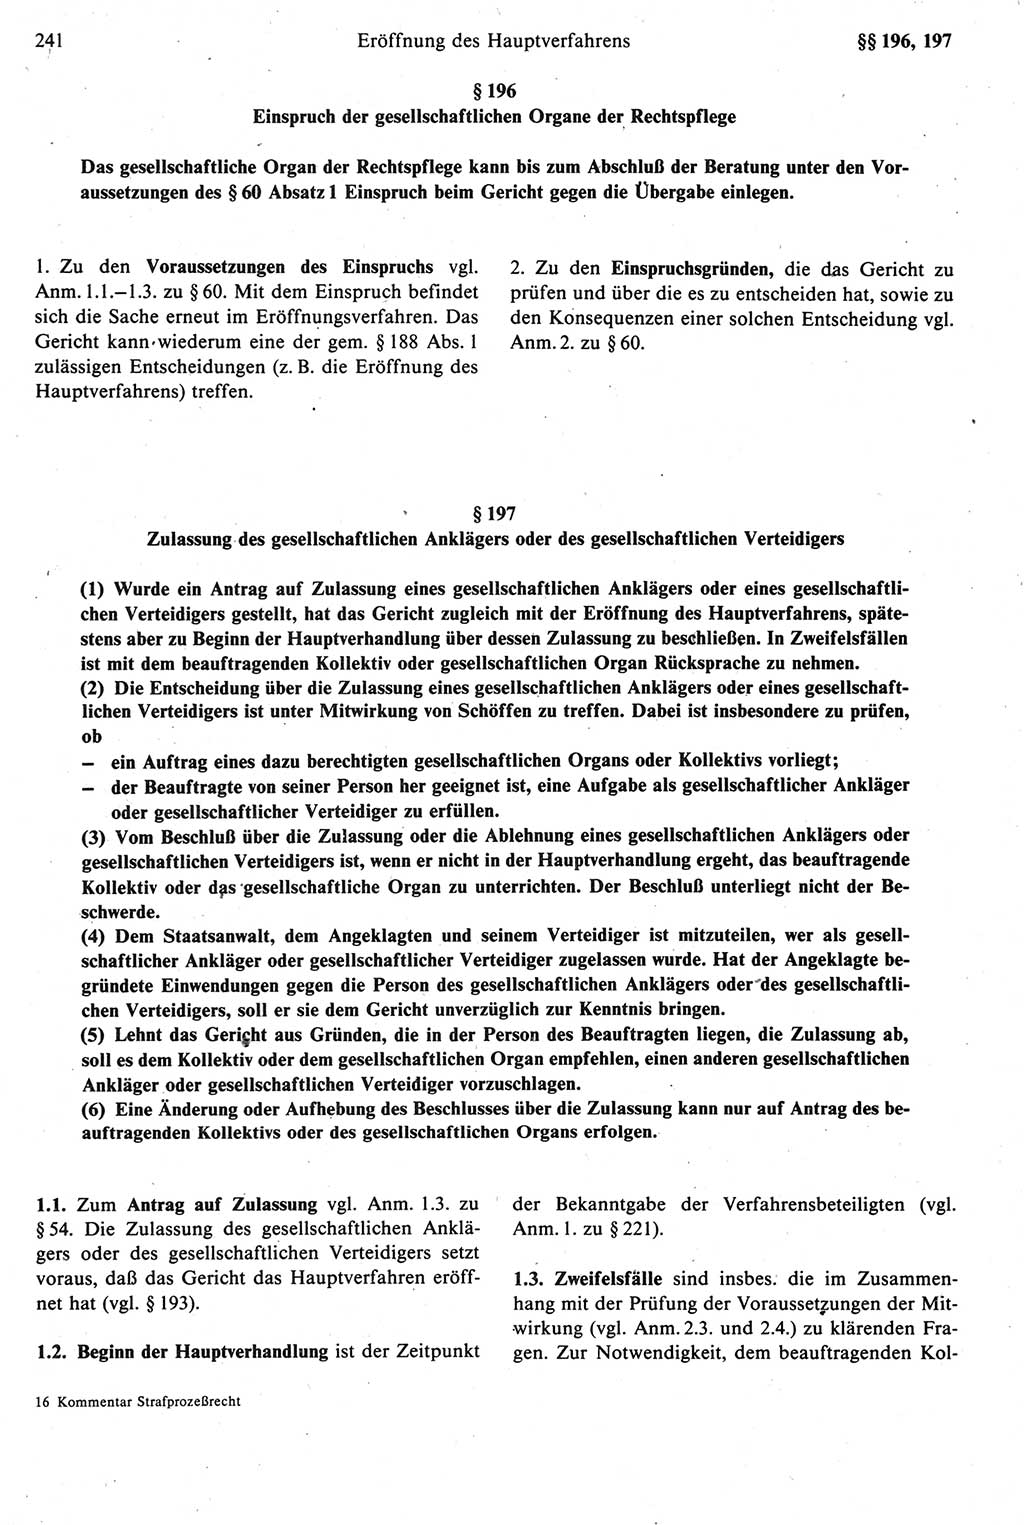 Strafprozeßrecht der DDR [Deutsche Demokratische Republik], Kommentar zur Strafprozeßordnung (StPO) 1987, Seite 241 (Strafprozeßr. DDR Komm. StPO 1987, S. 241)